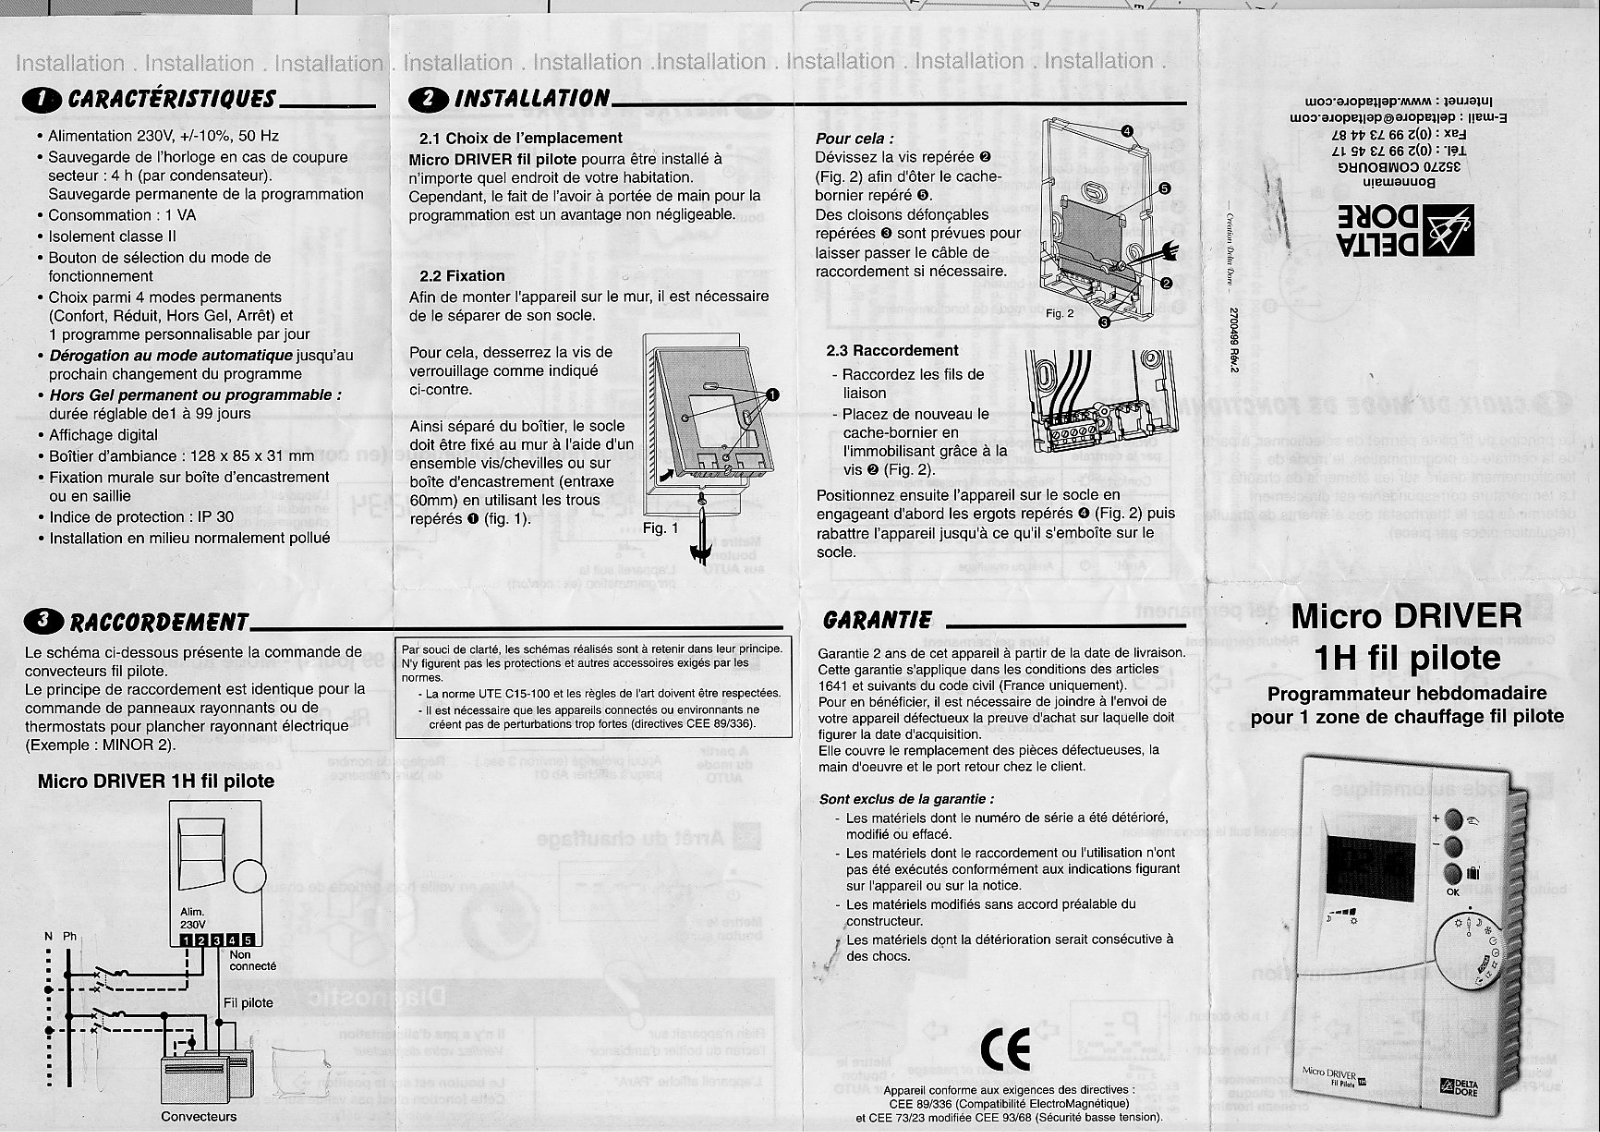 DELTADORE MICRO DRIVER 1H FIL PILOTE User Manual